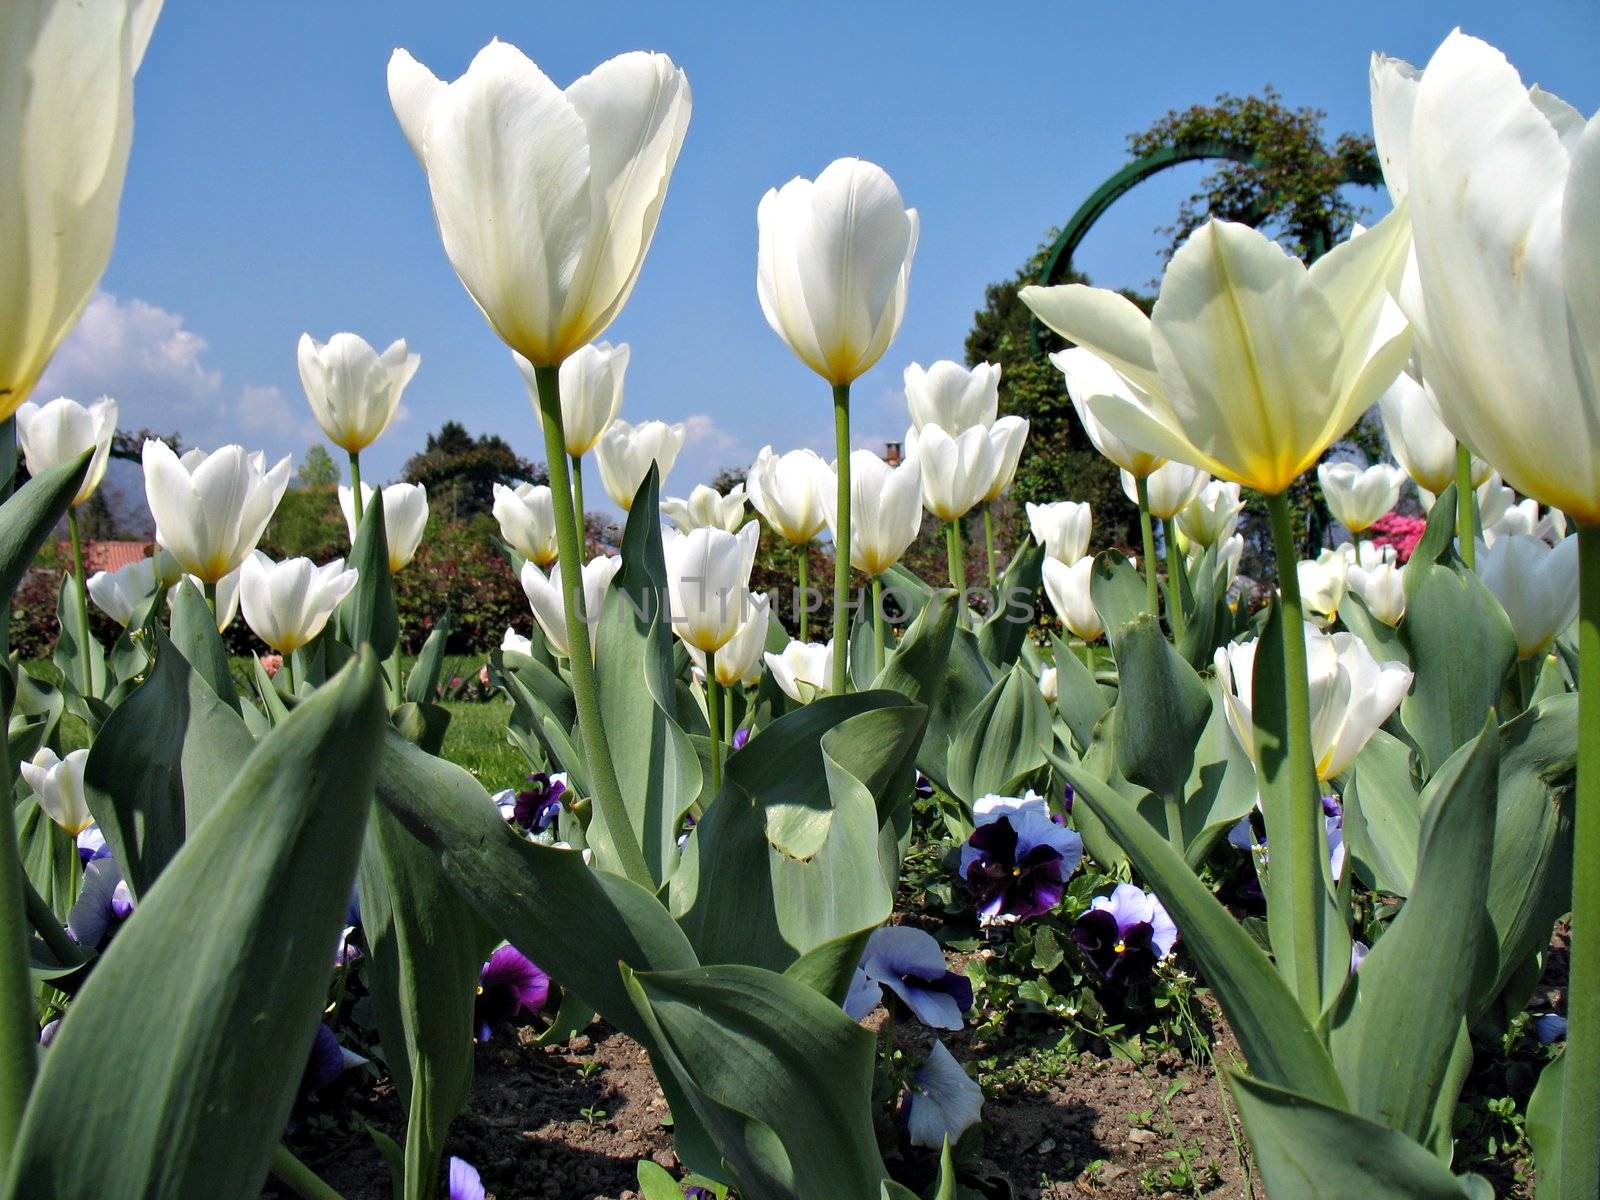 White tulips and violets in a garden near Lago Maggiore, Italy 